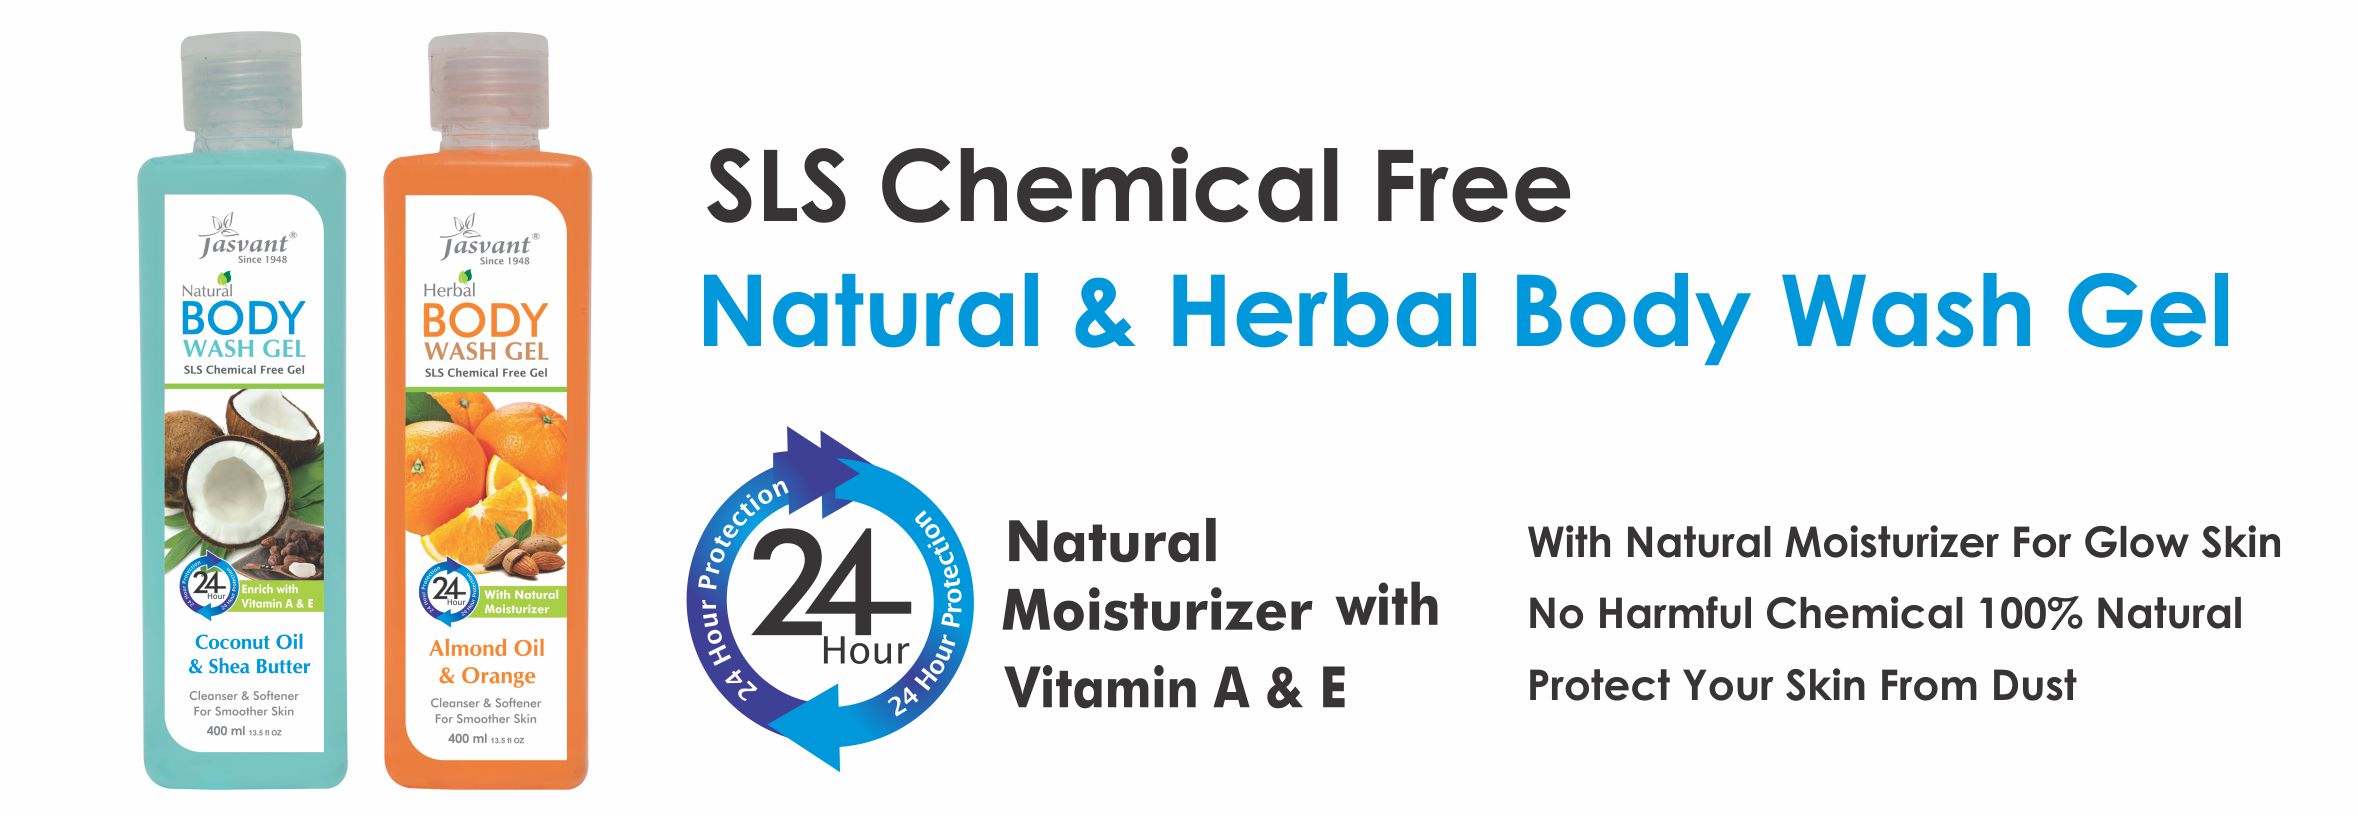 Herbal& Natural Body Wash Gel